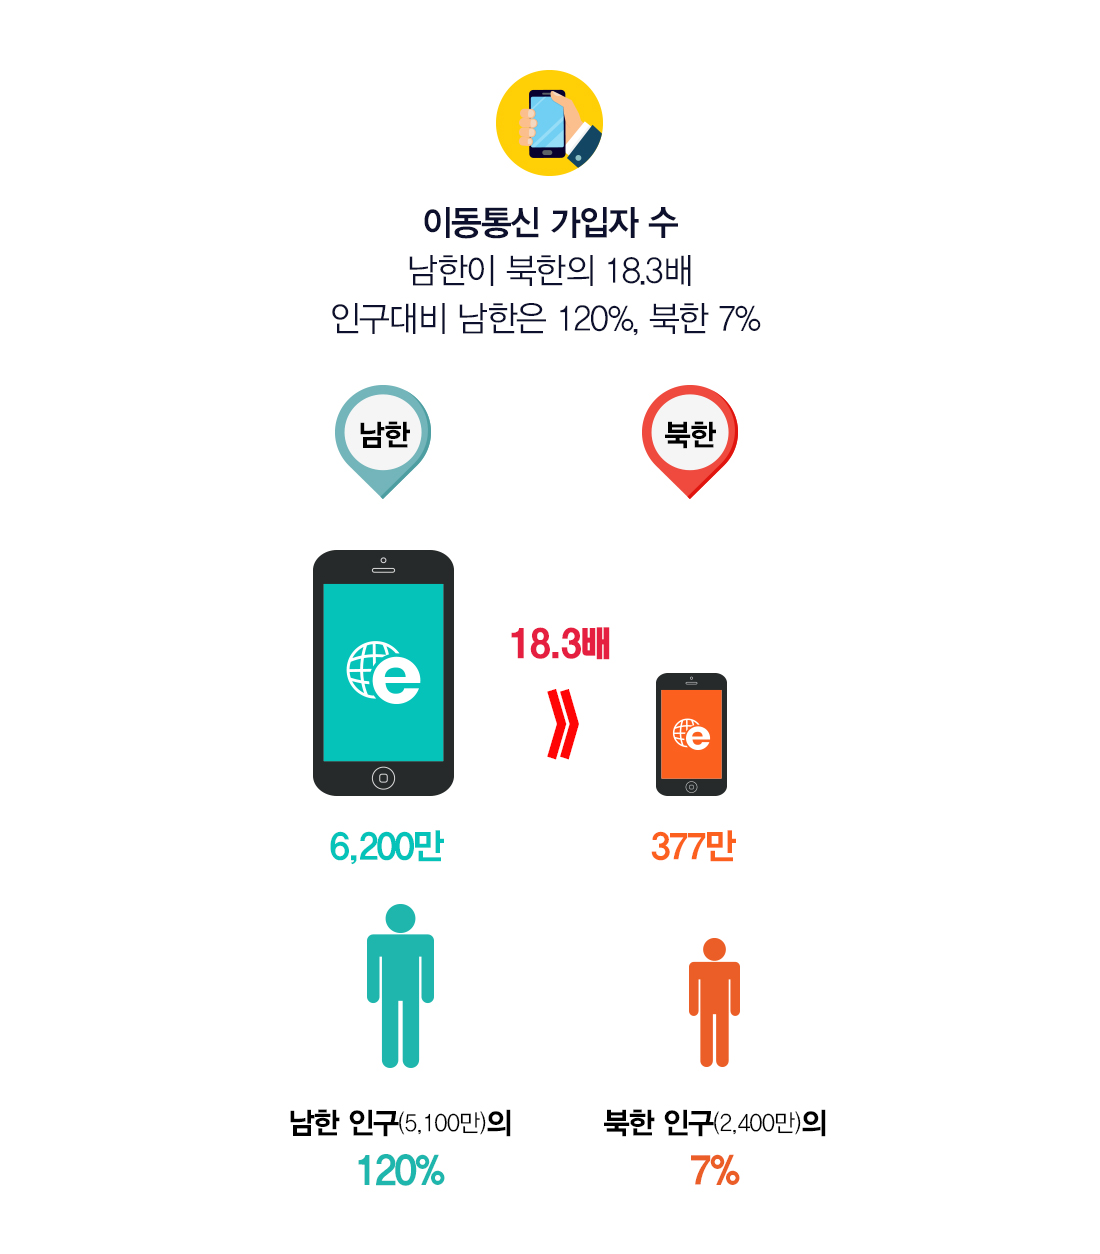 이동통신 가입자 수 남한이 북한의 18.3배 전체 인구대비 남한은 120%, 북한 7.12% 